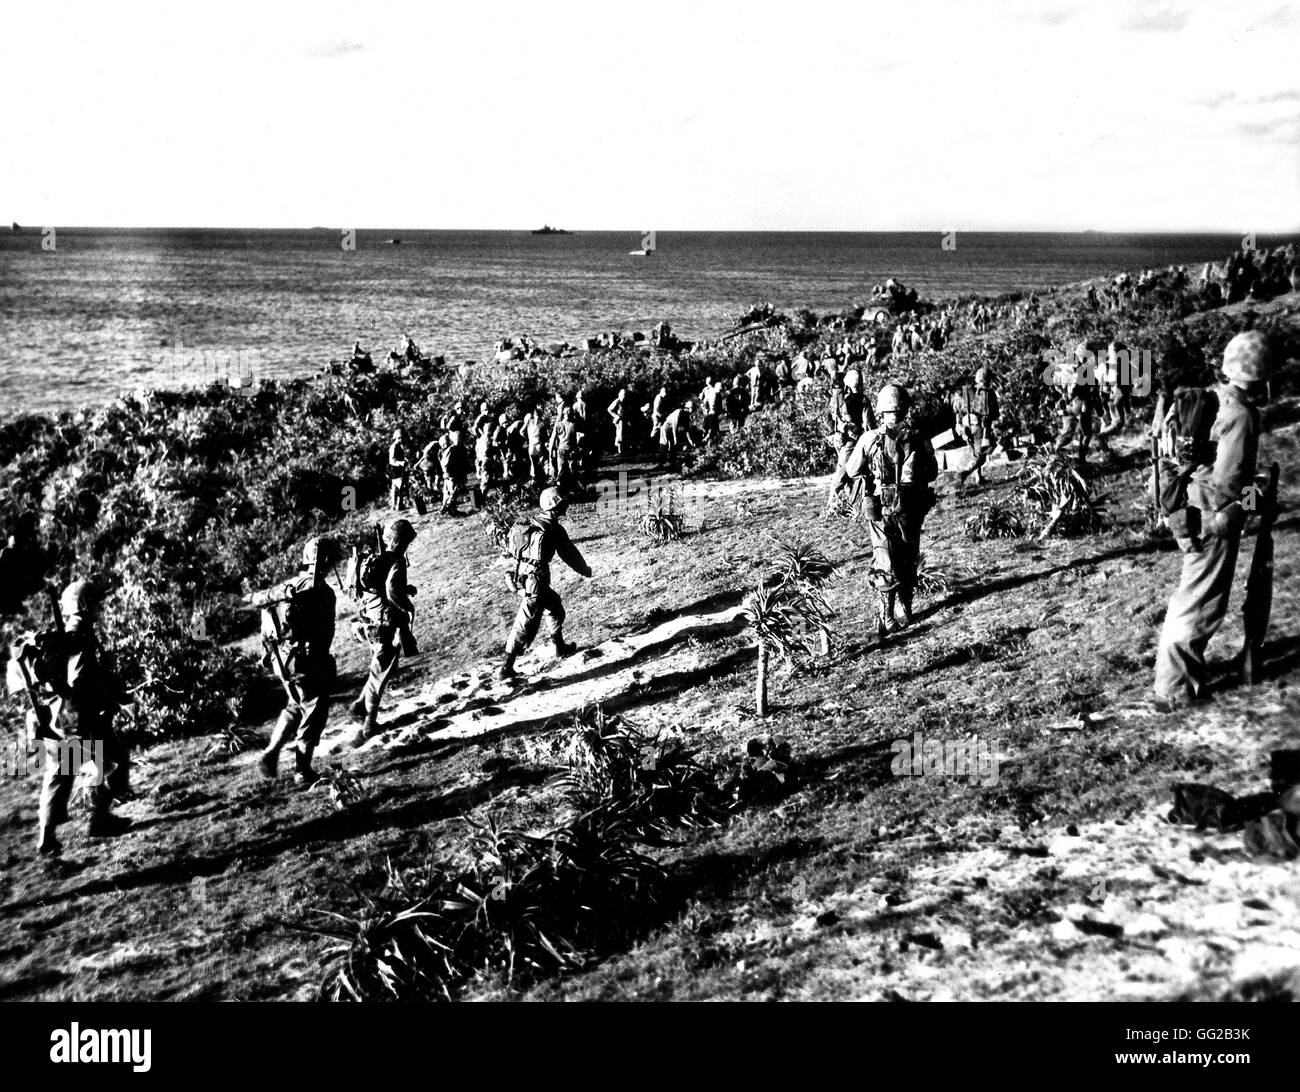 La guerre dans le Pacifique. Les troupes de l'US Navy à Agunajima (30 milles à l'ouest d'Okinawa) Juillet 1945 Japon - la deuxième guerre mondiale, les archives nationales, Washington Banque D'Images